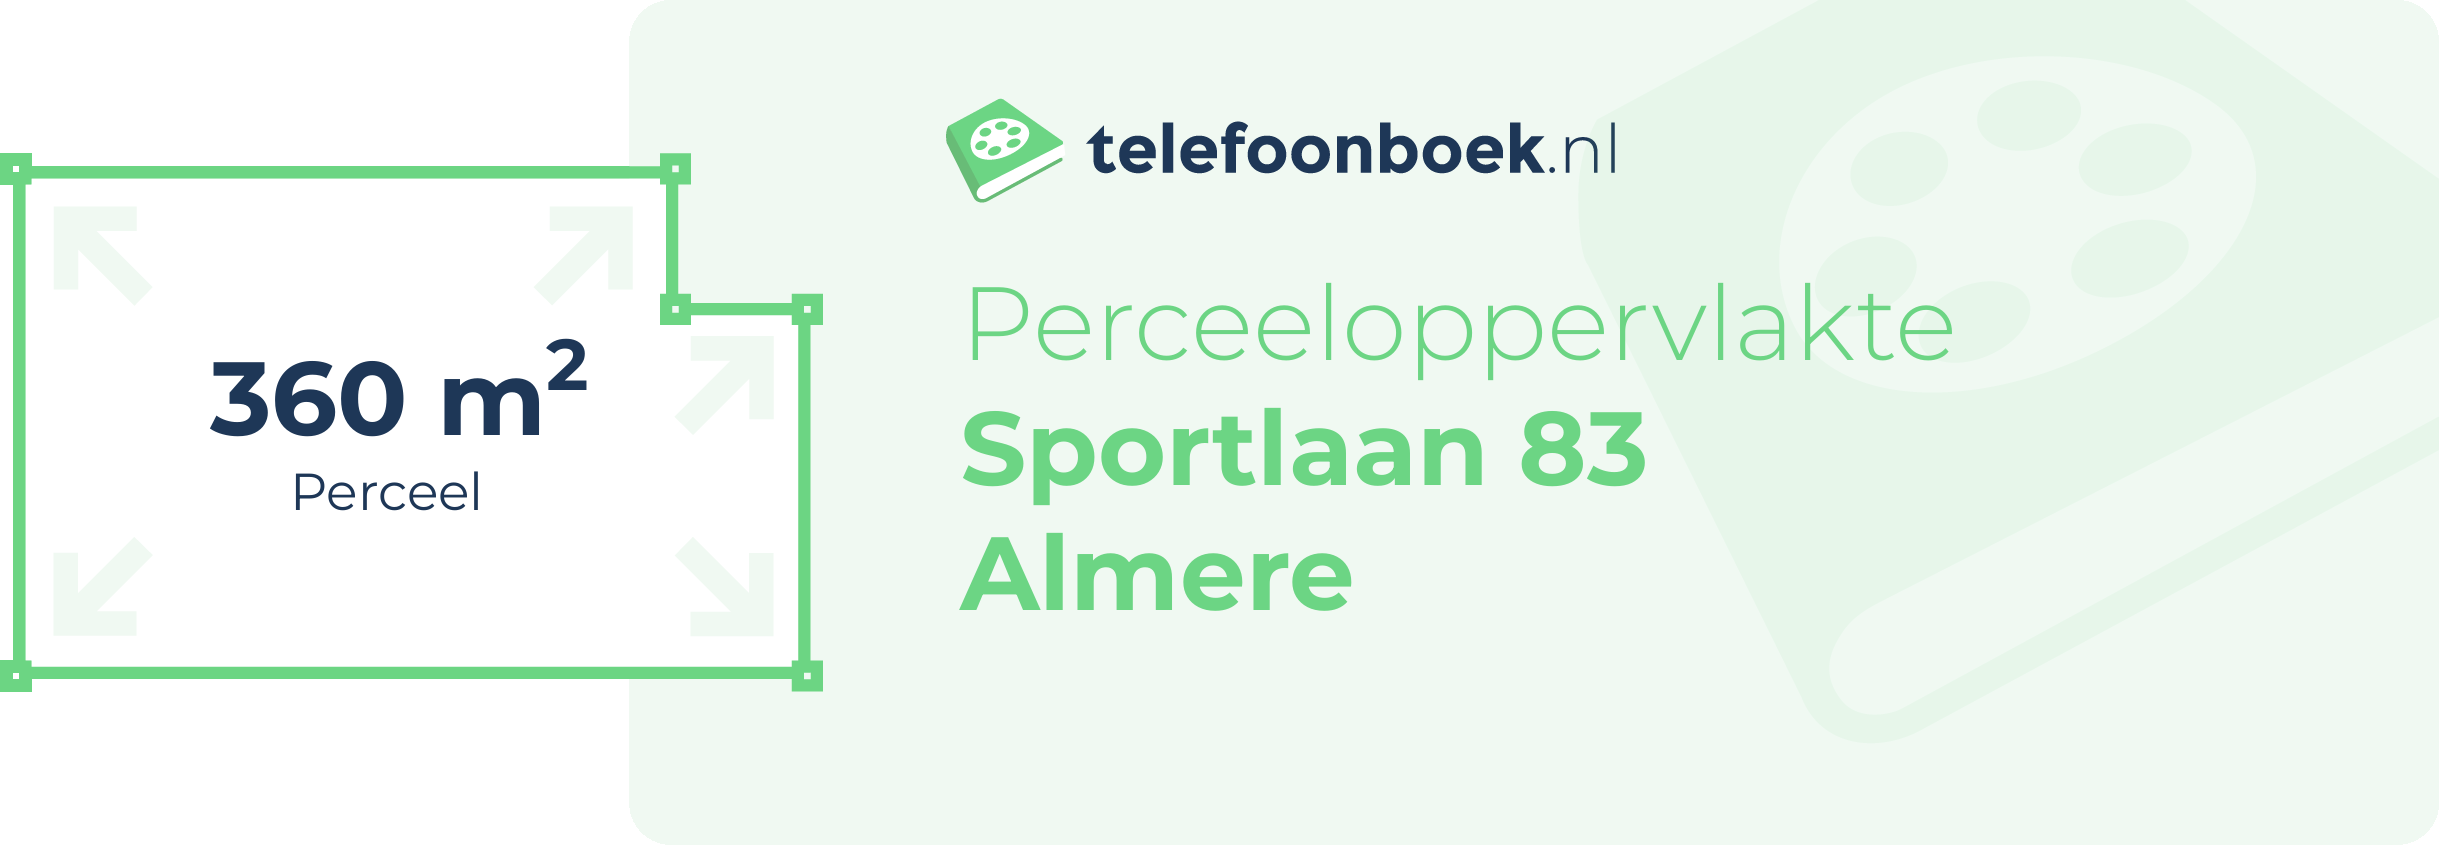 Perceeloppervlakte Sportlaan 83 Almere